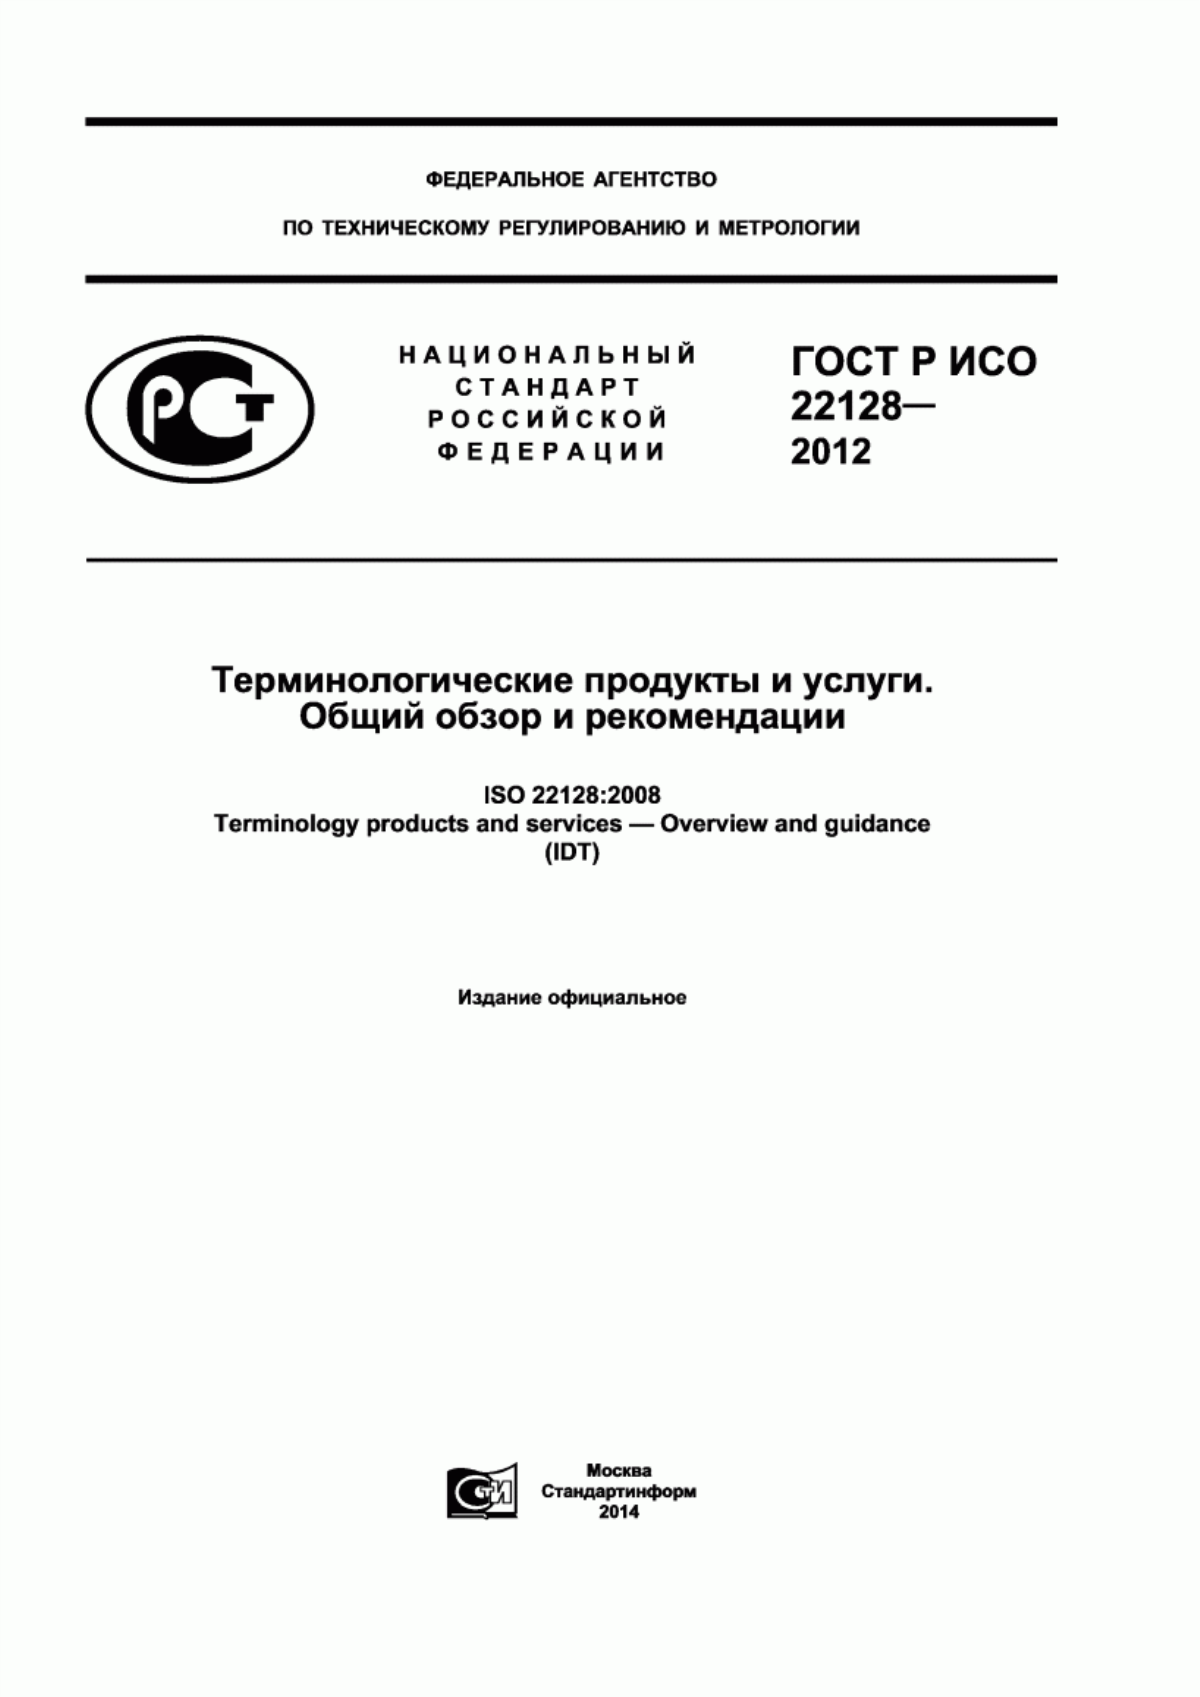 ГОСТ Р ИСО 22128-2012 Терминологические продукты и услуги. Общий обзор и рекомендации